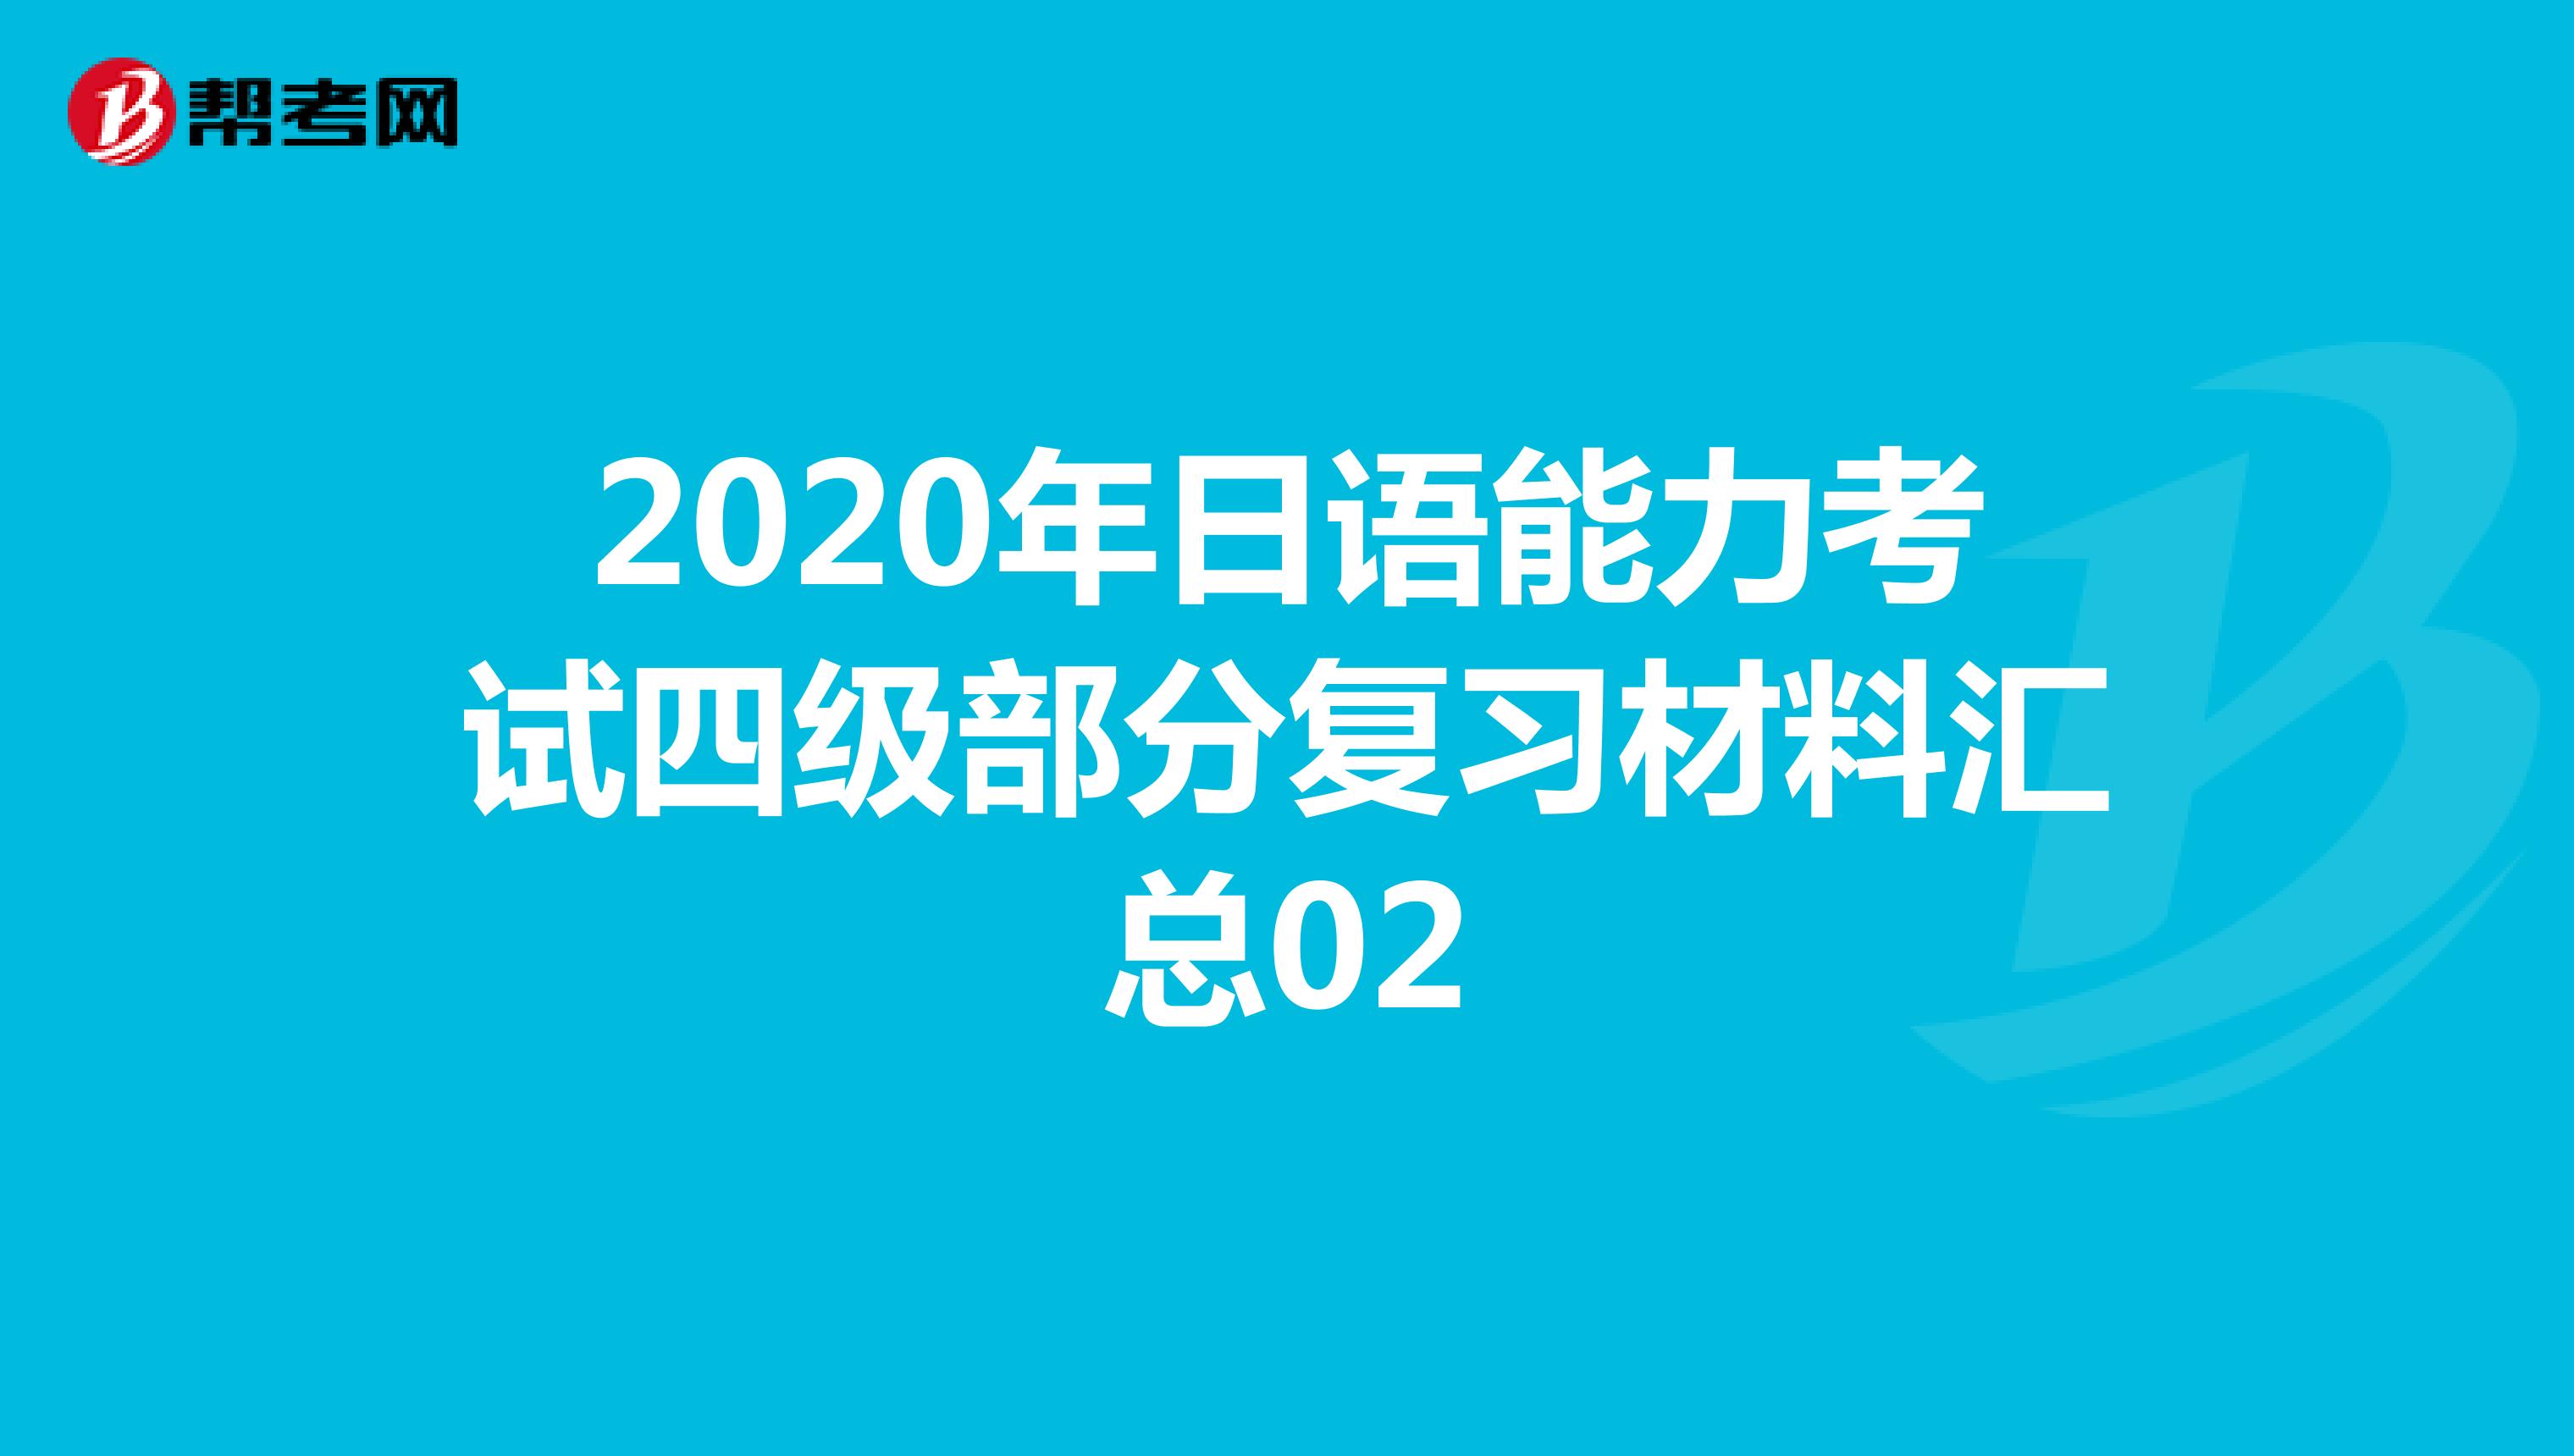 2020年日语能力考试四级部分复习材料汇总02